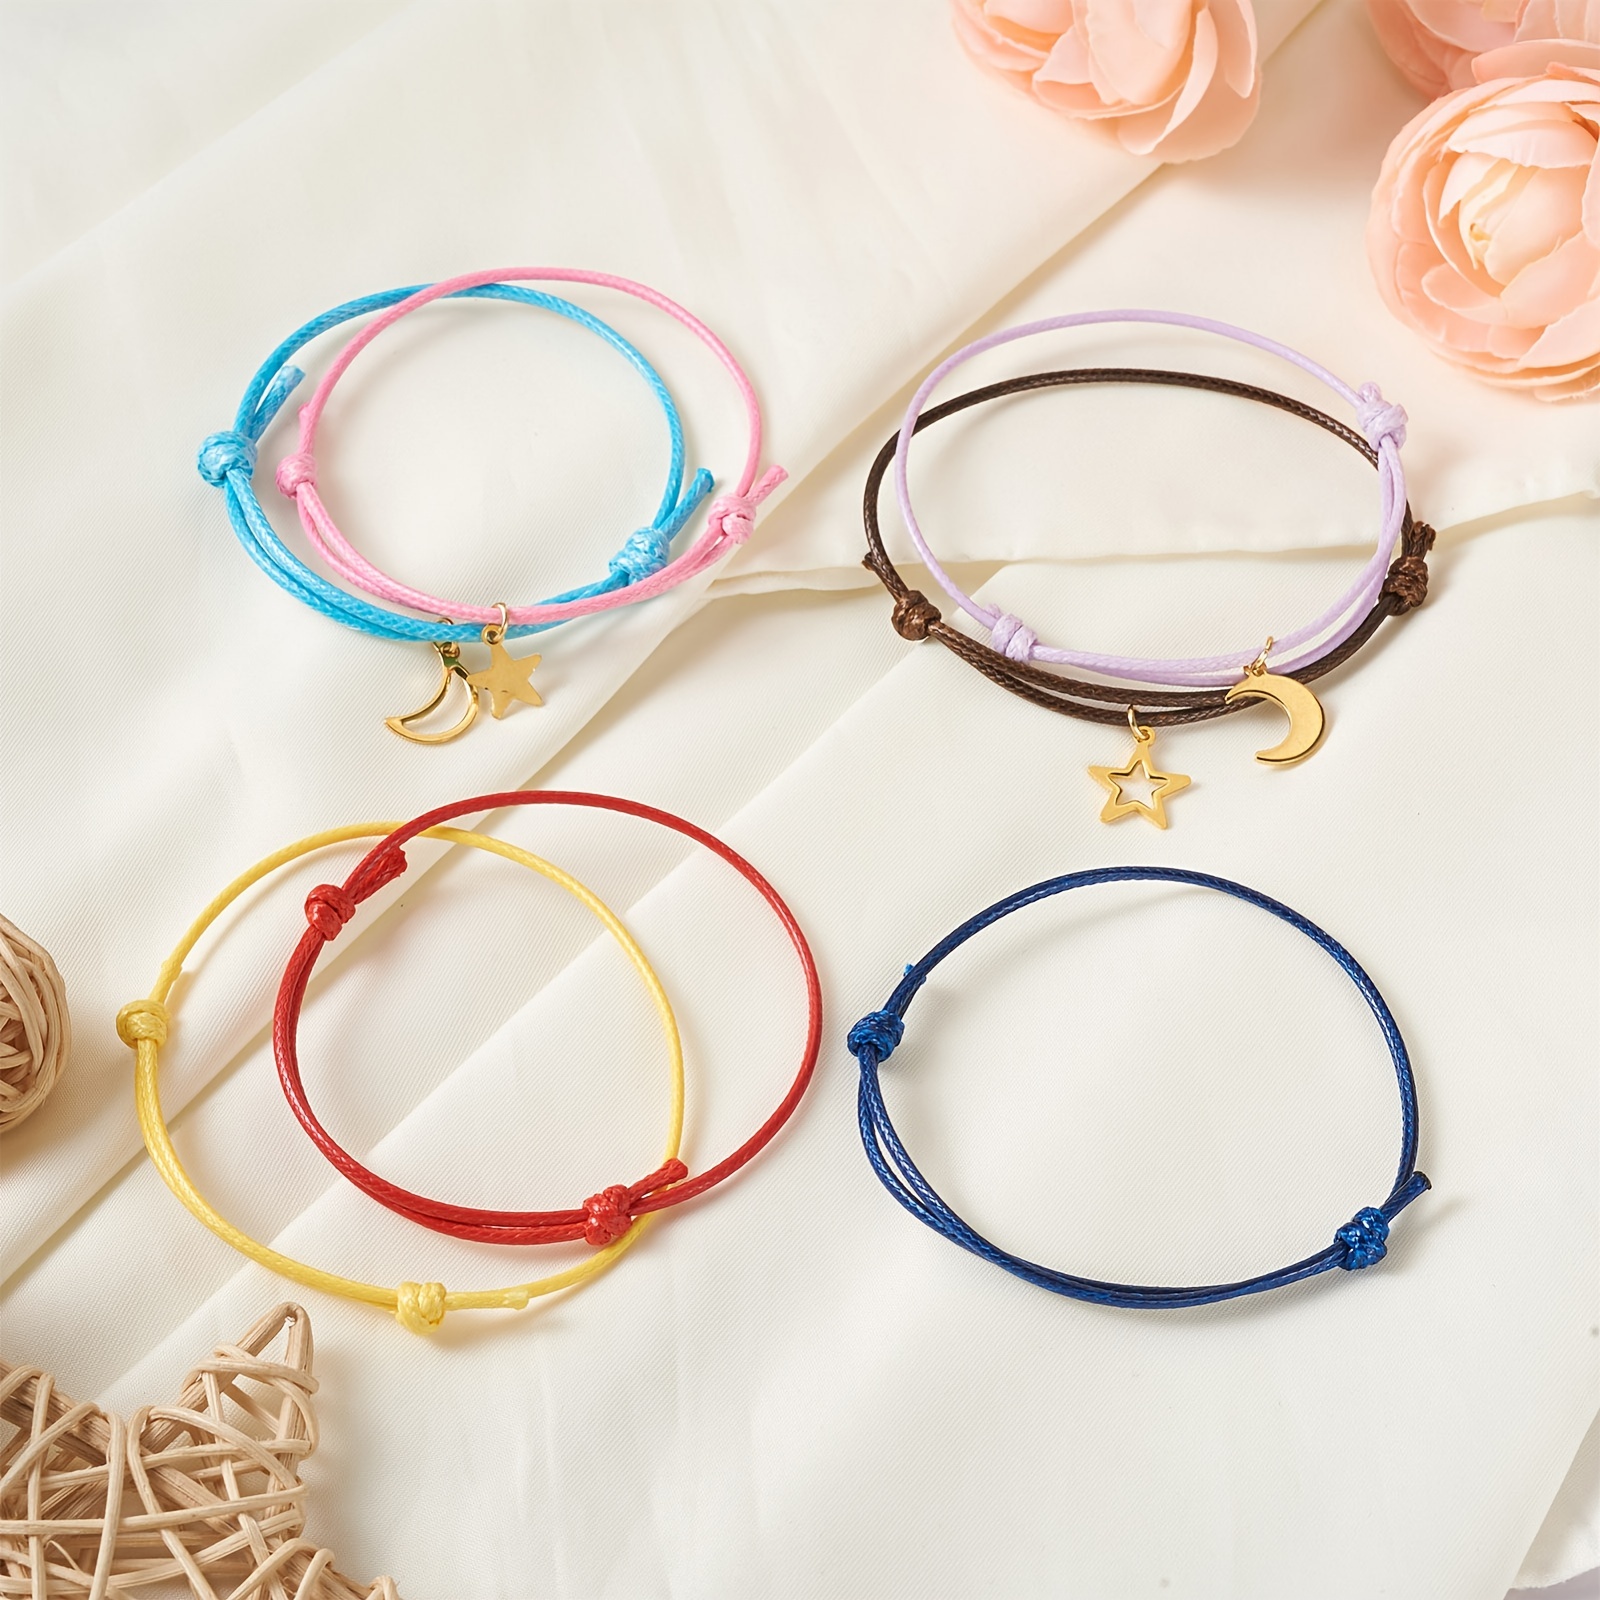 Bracelet Making Kit For Girls - Temu South Korea